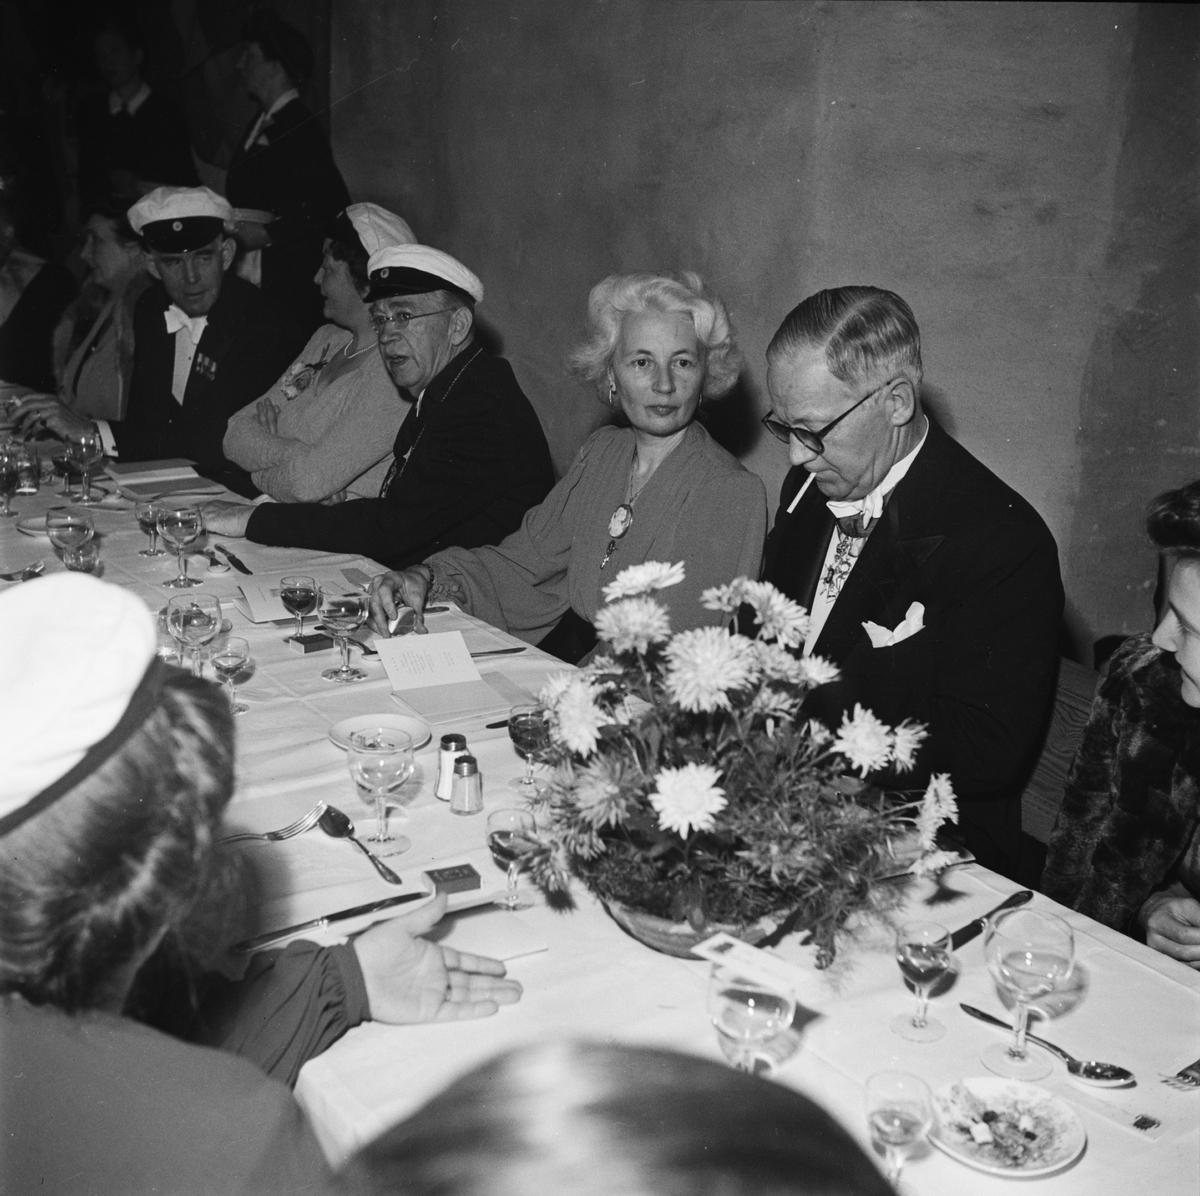 Män och kvinnor i studentmössor vid dukat festbord, sannolikt på rikssalsbanketten i samband med Östgöta nations 300-årsjubileum, Uppsala 1946